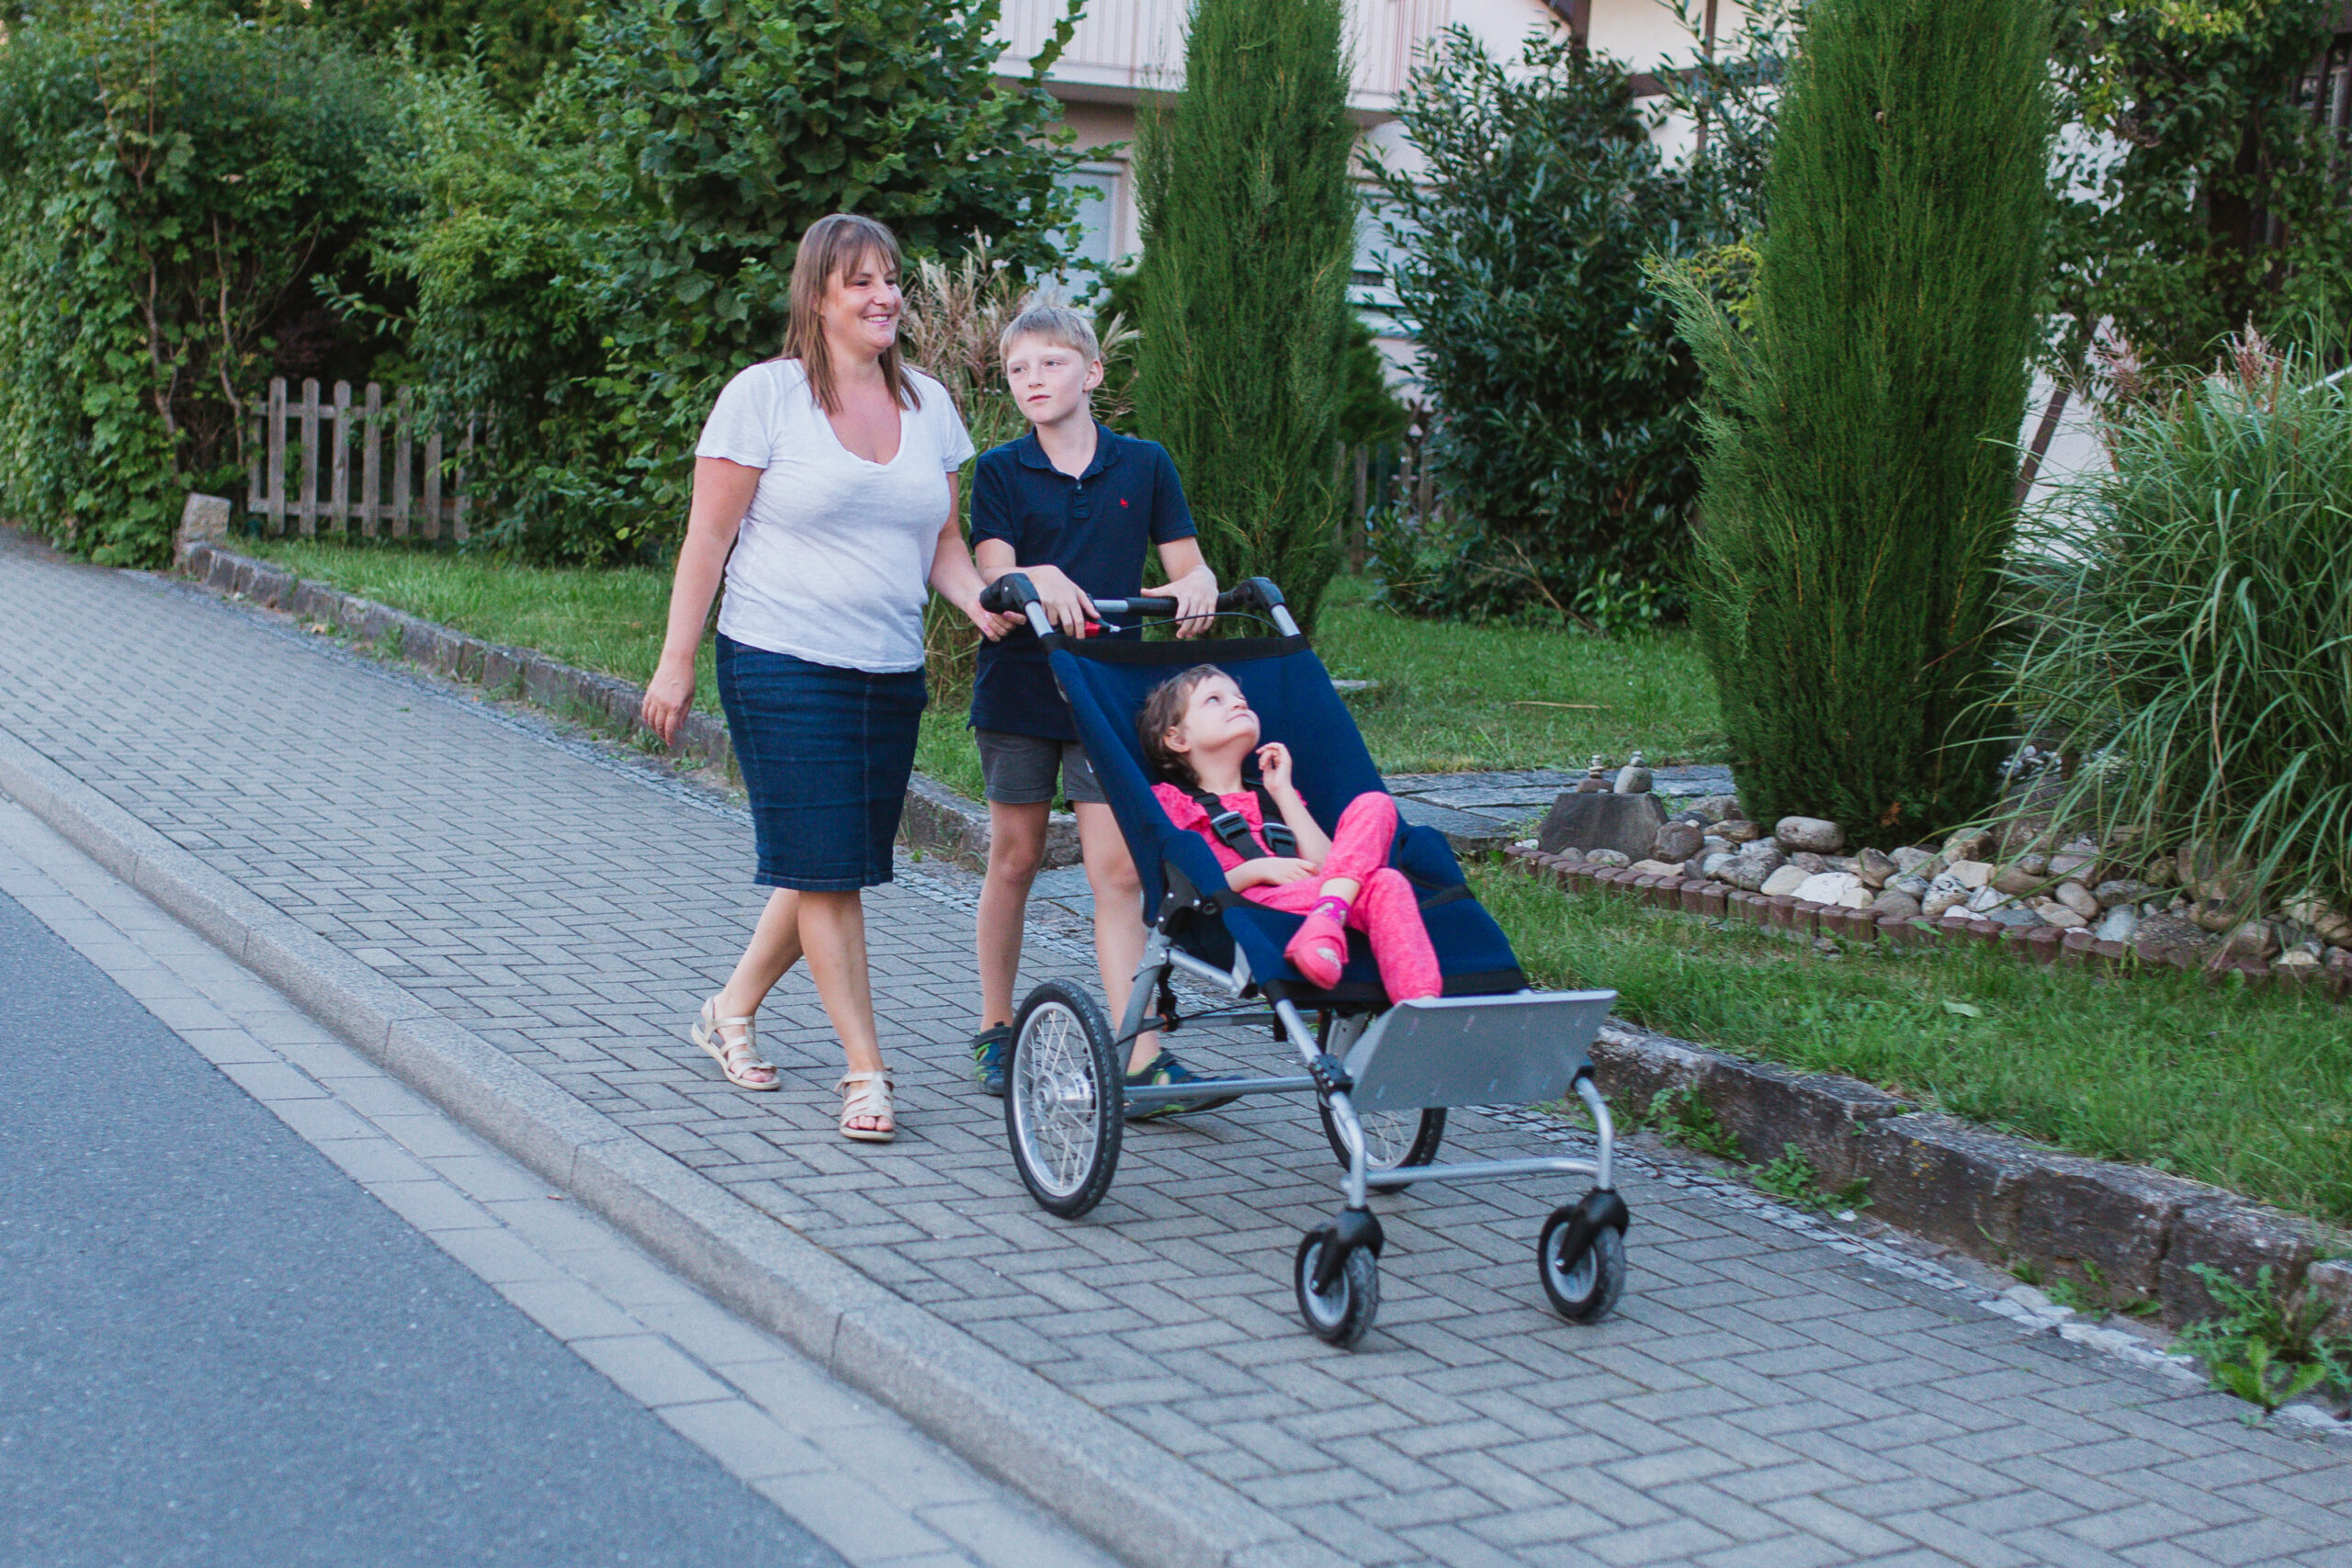 Post gouden Vanaf daar Multiroller: aangepaste buggy voor groot kind | B&S Onbeperkt in beweging